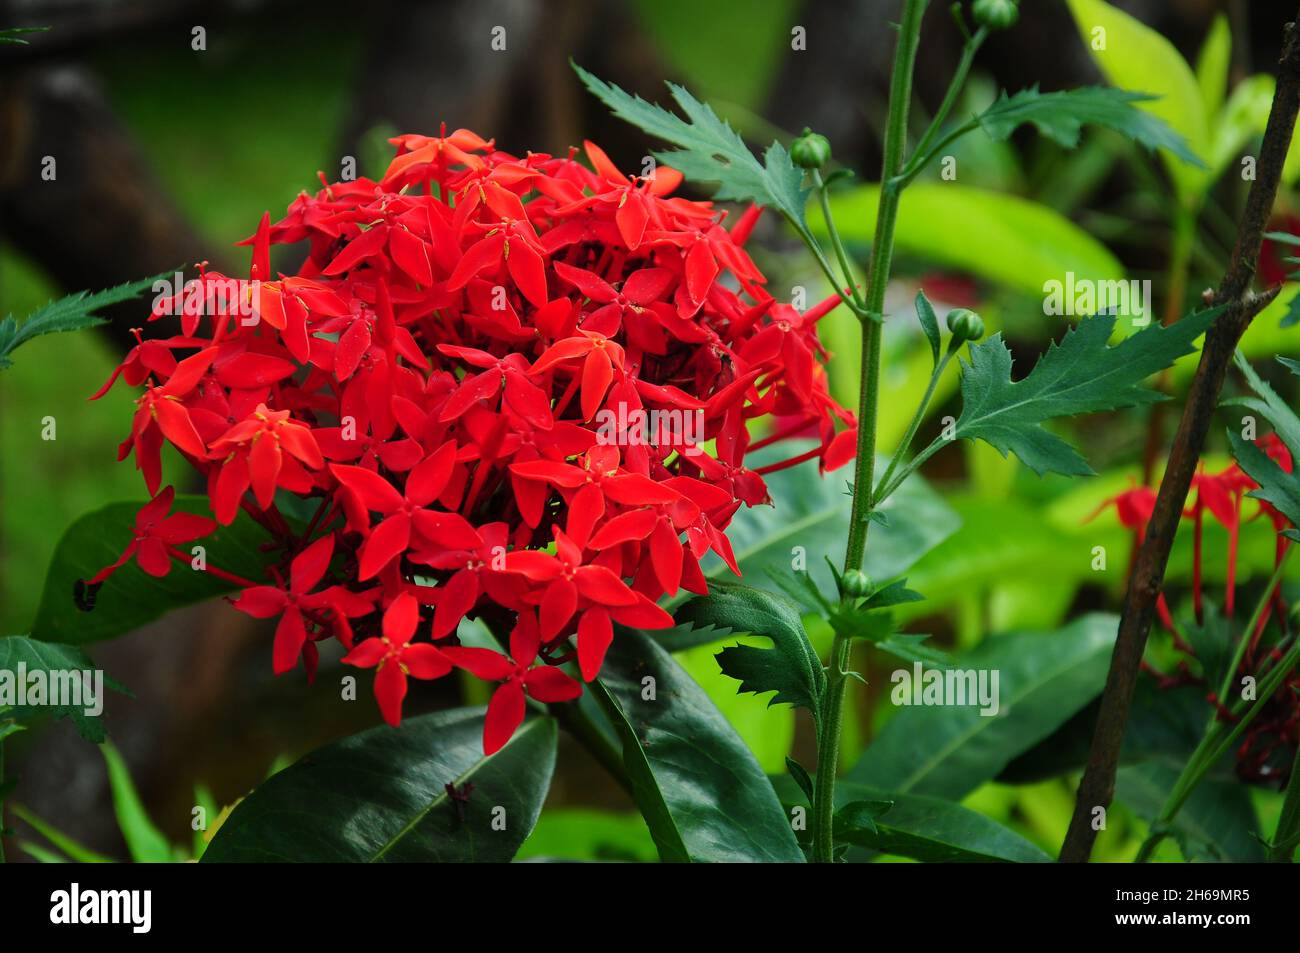 Wunderschöne Blumenfotografie Stockfoto